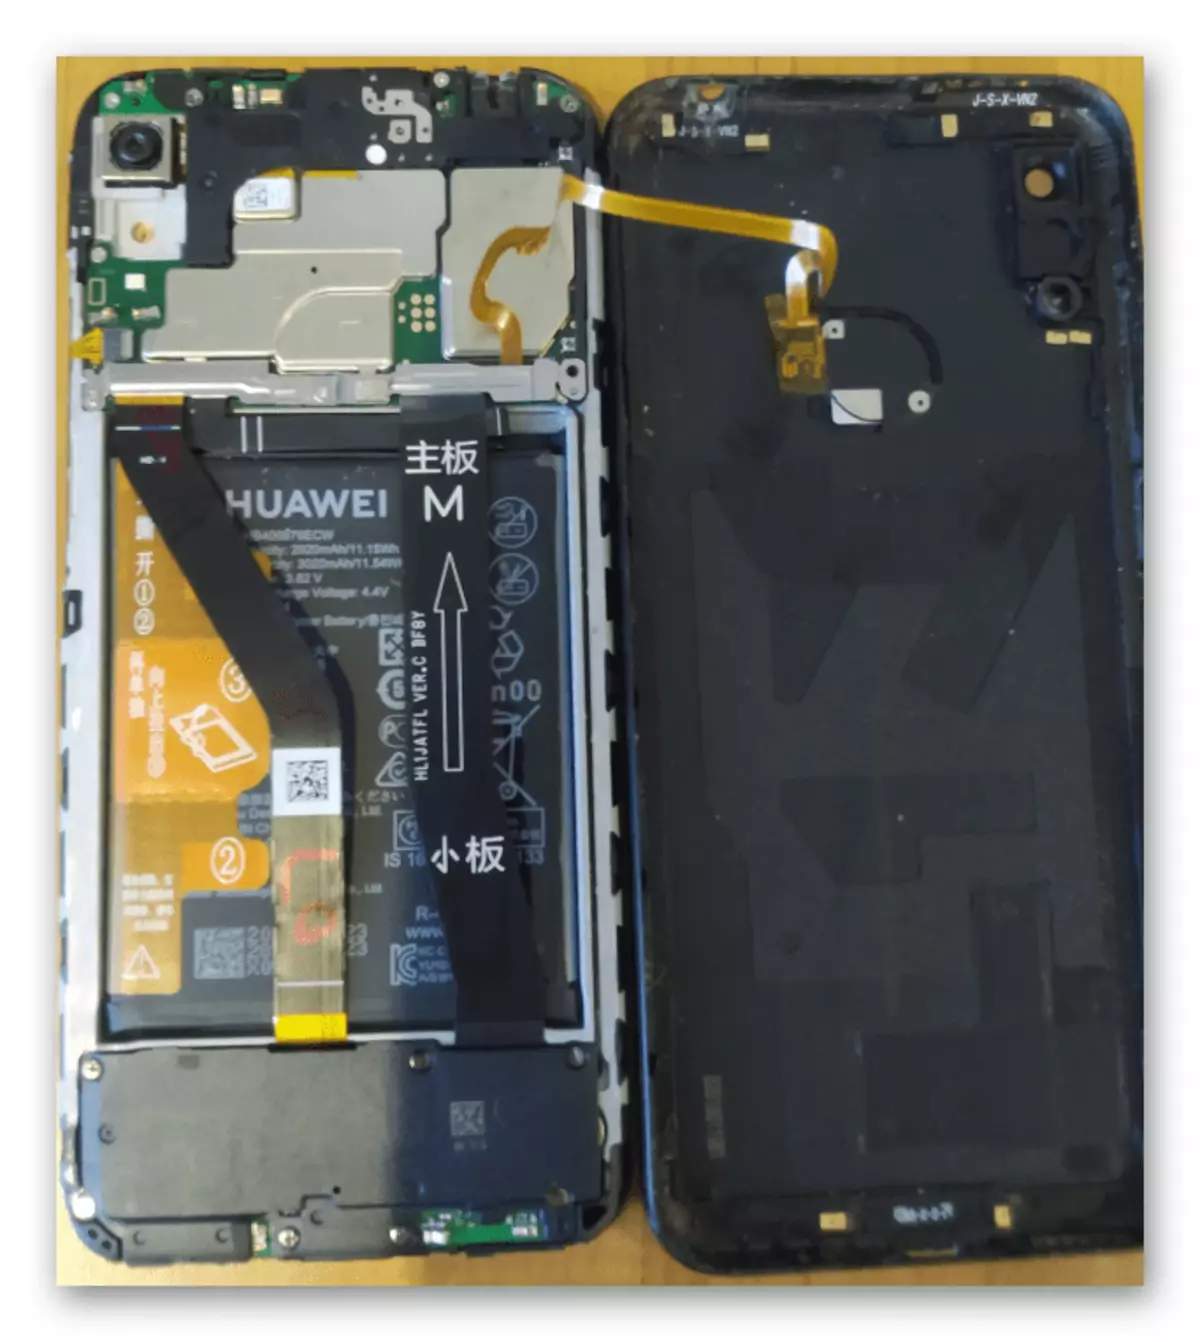 Huawei Honor 8A Extracción de la cubierta posterior del aparato para acceder a pruebas cuando gritando